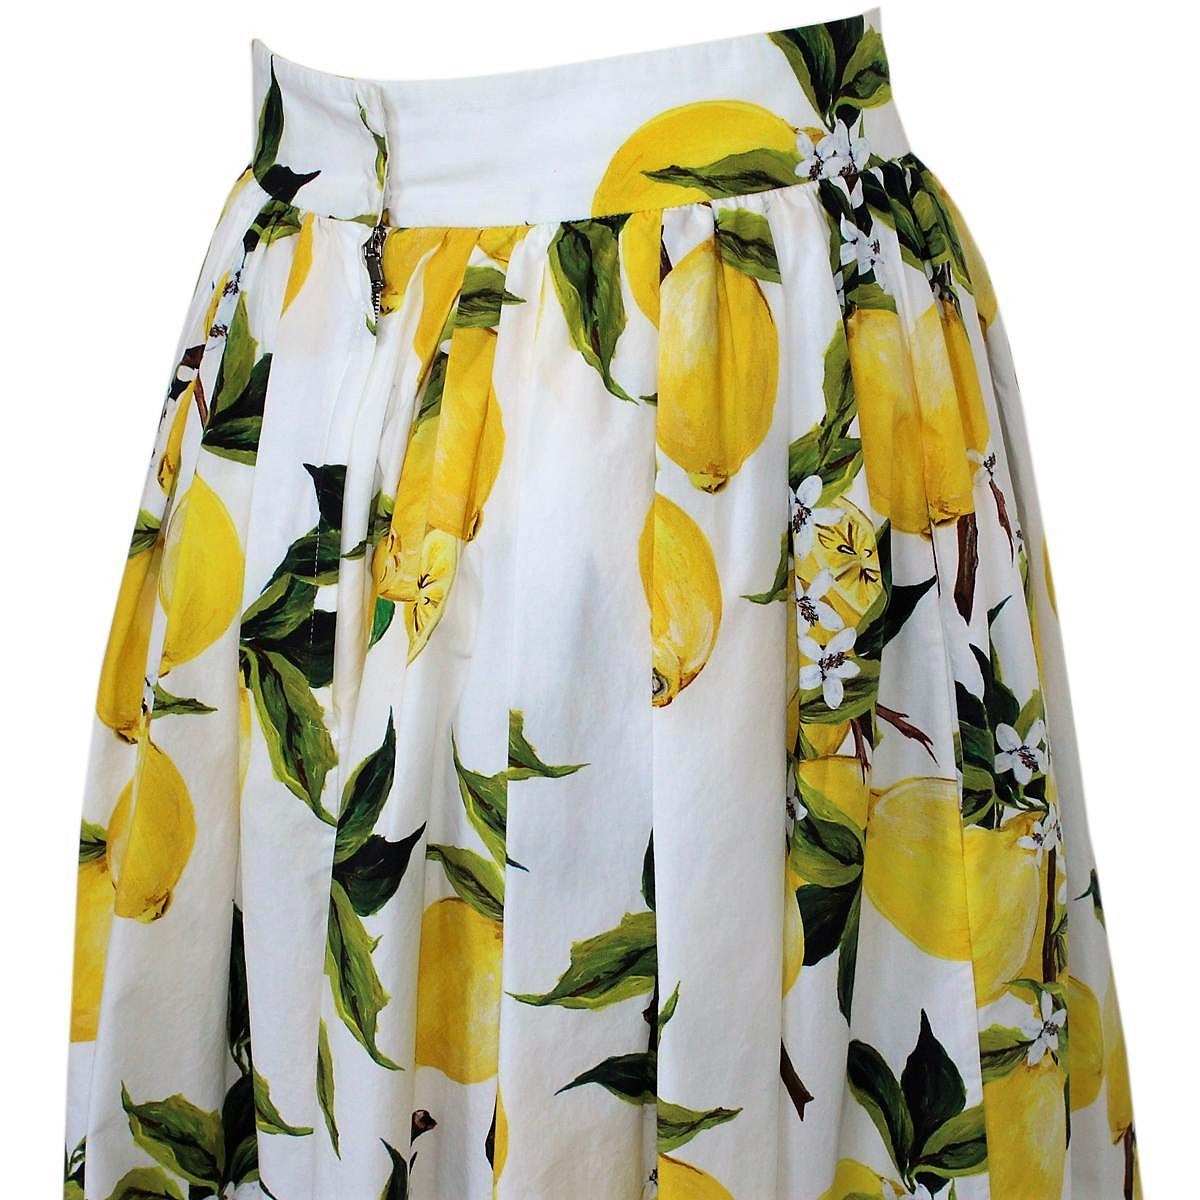 dolce and gabbana lemon skirt